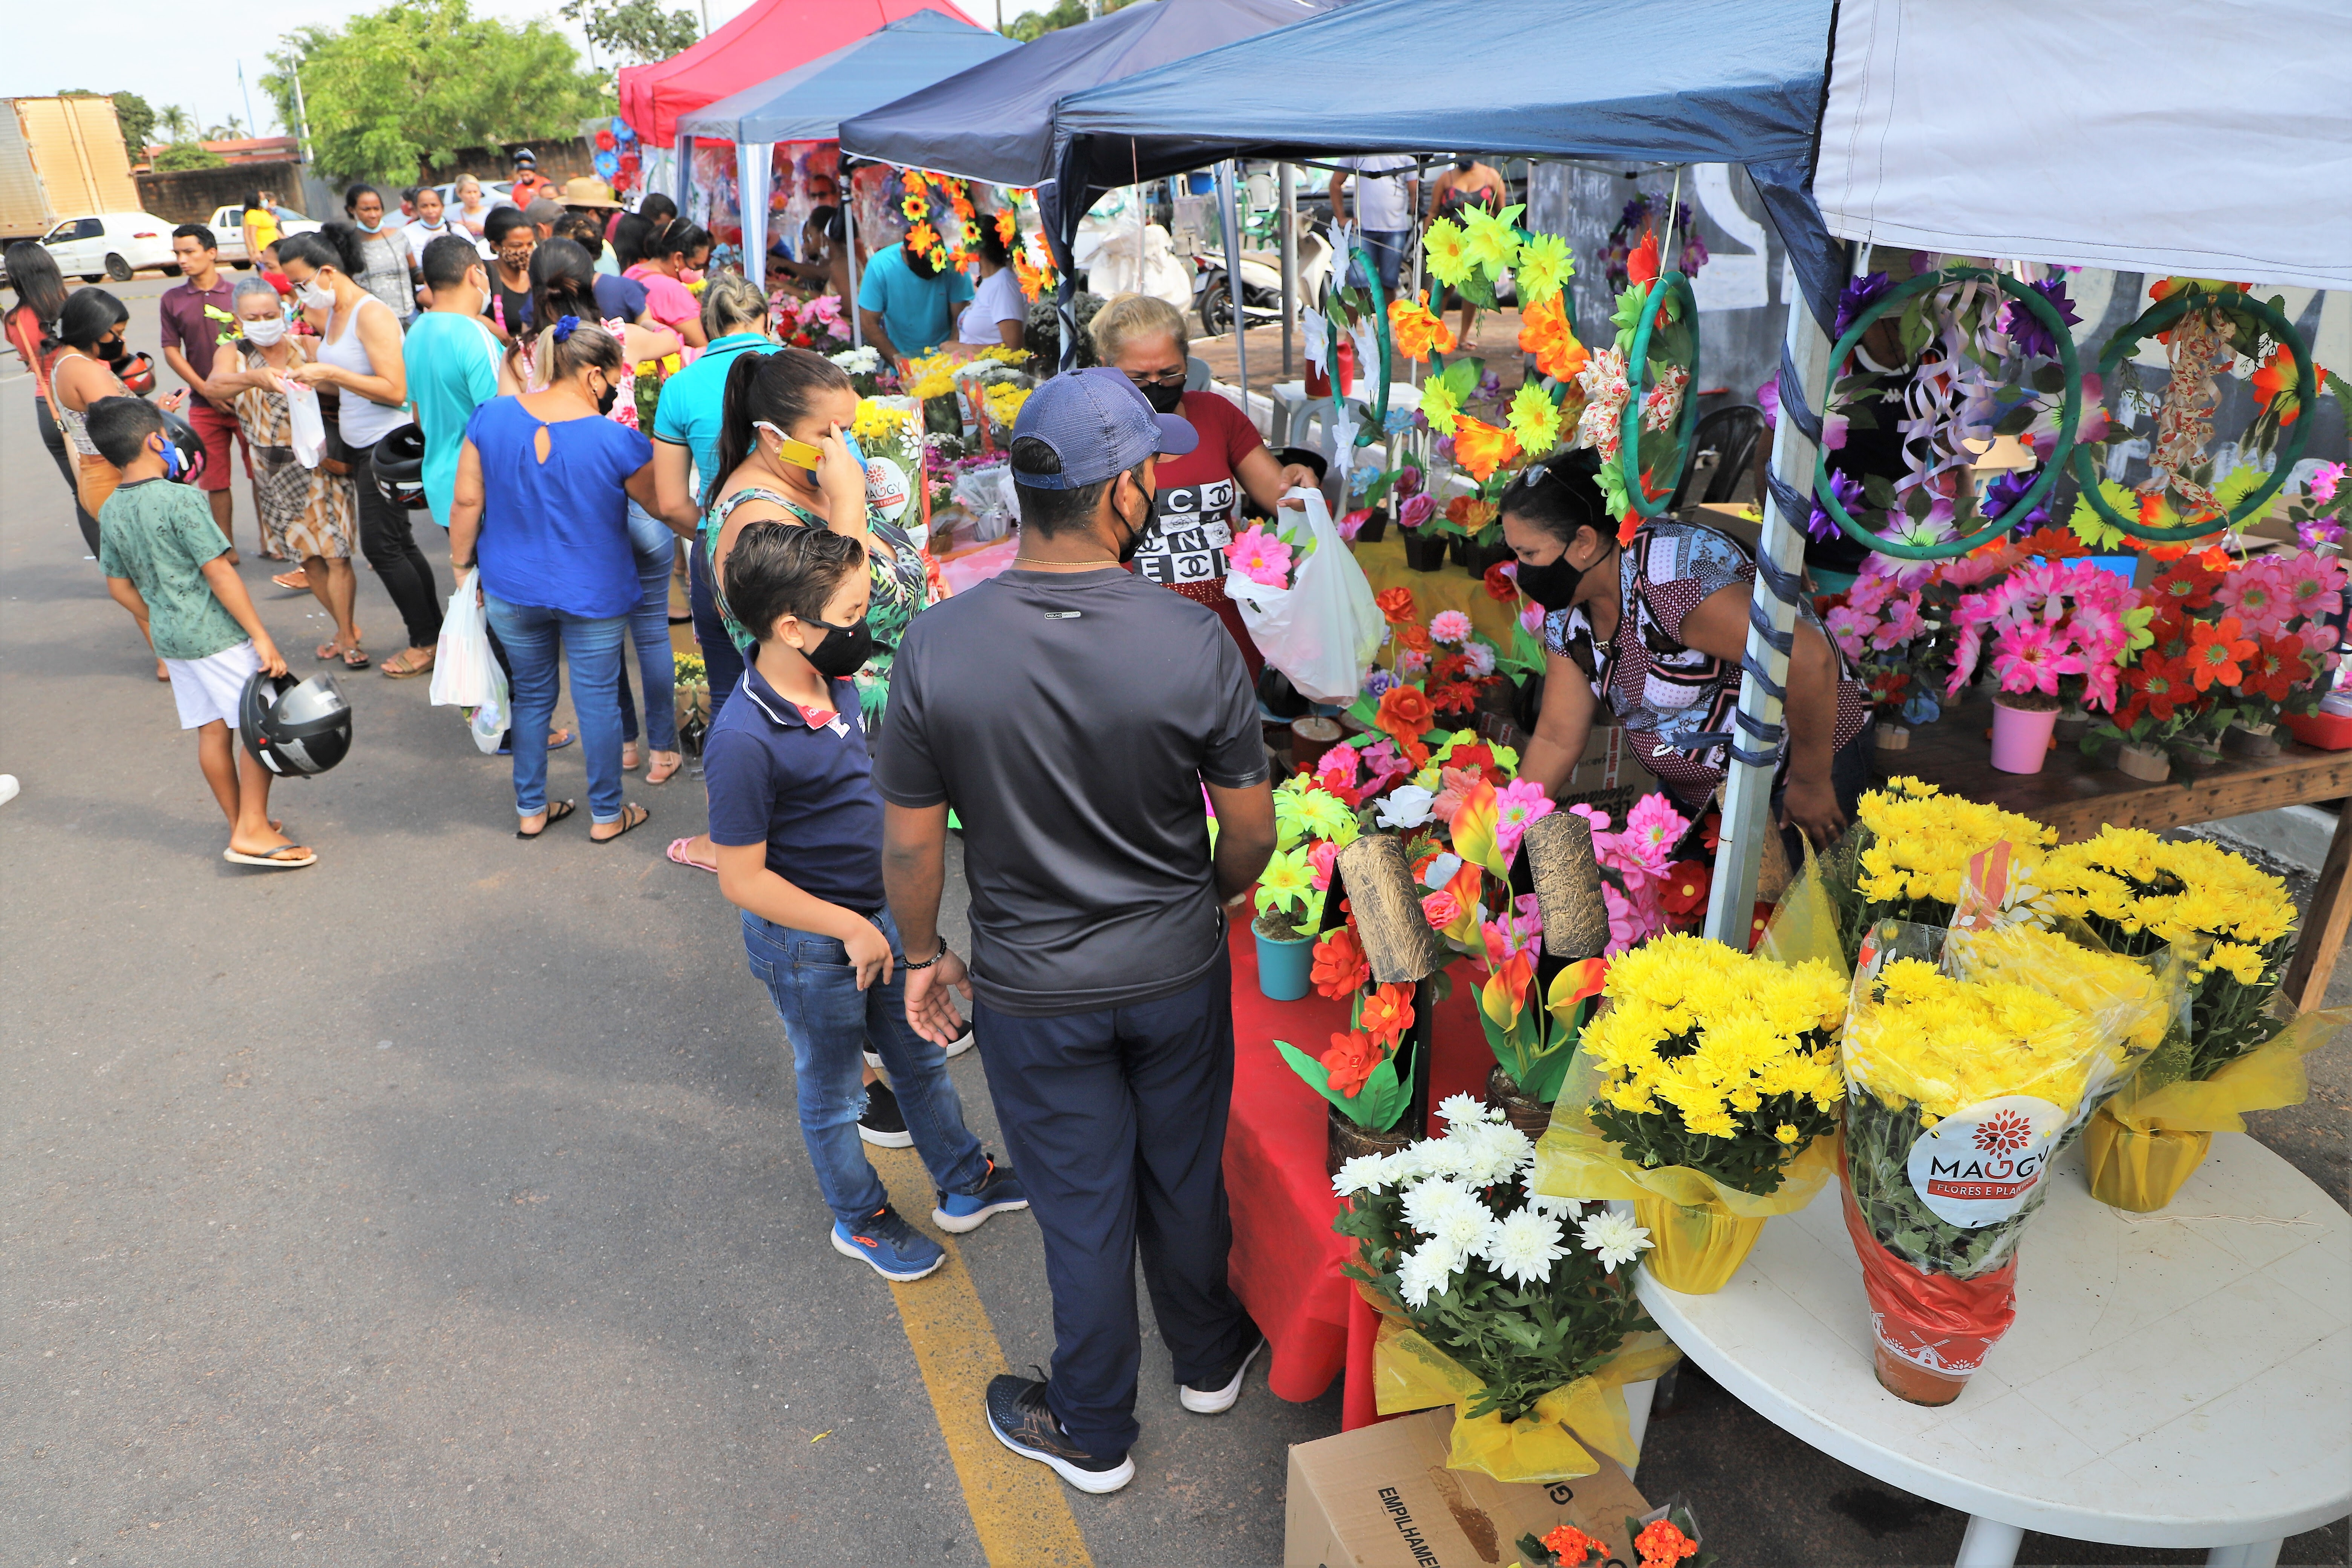 Ao todo, 35 comerciantes devidamente cadastrados comercializarão velas, flores, além de comidas e bebidas, nos dois cemitérios